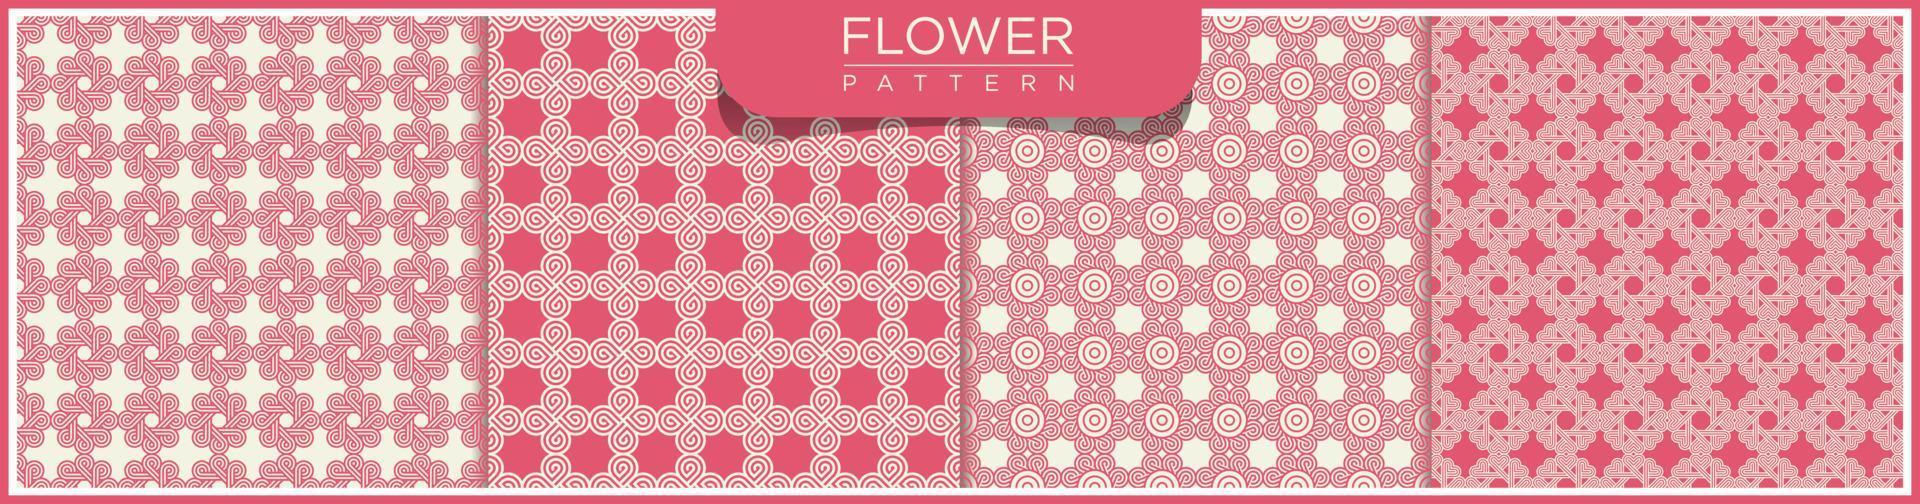 uppsättning av blomma abstrakt vektor sömlösa linjemönster. vit och rosa bakgrund med arabiska ornament. mönster, bakgrunder och tapeter för din design. textil prydnad. vektor illustration.